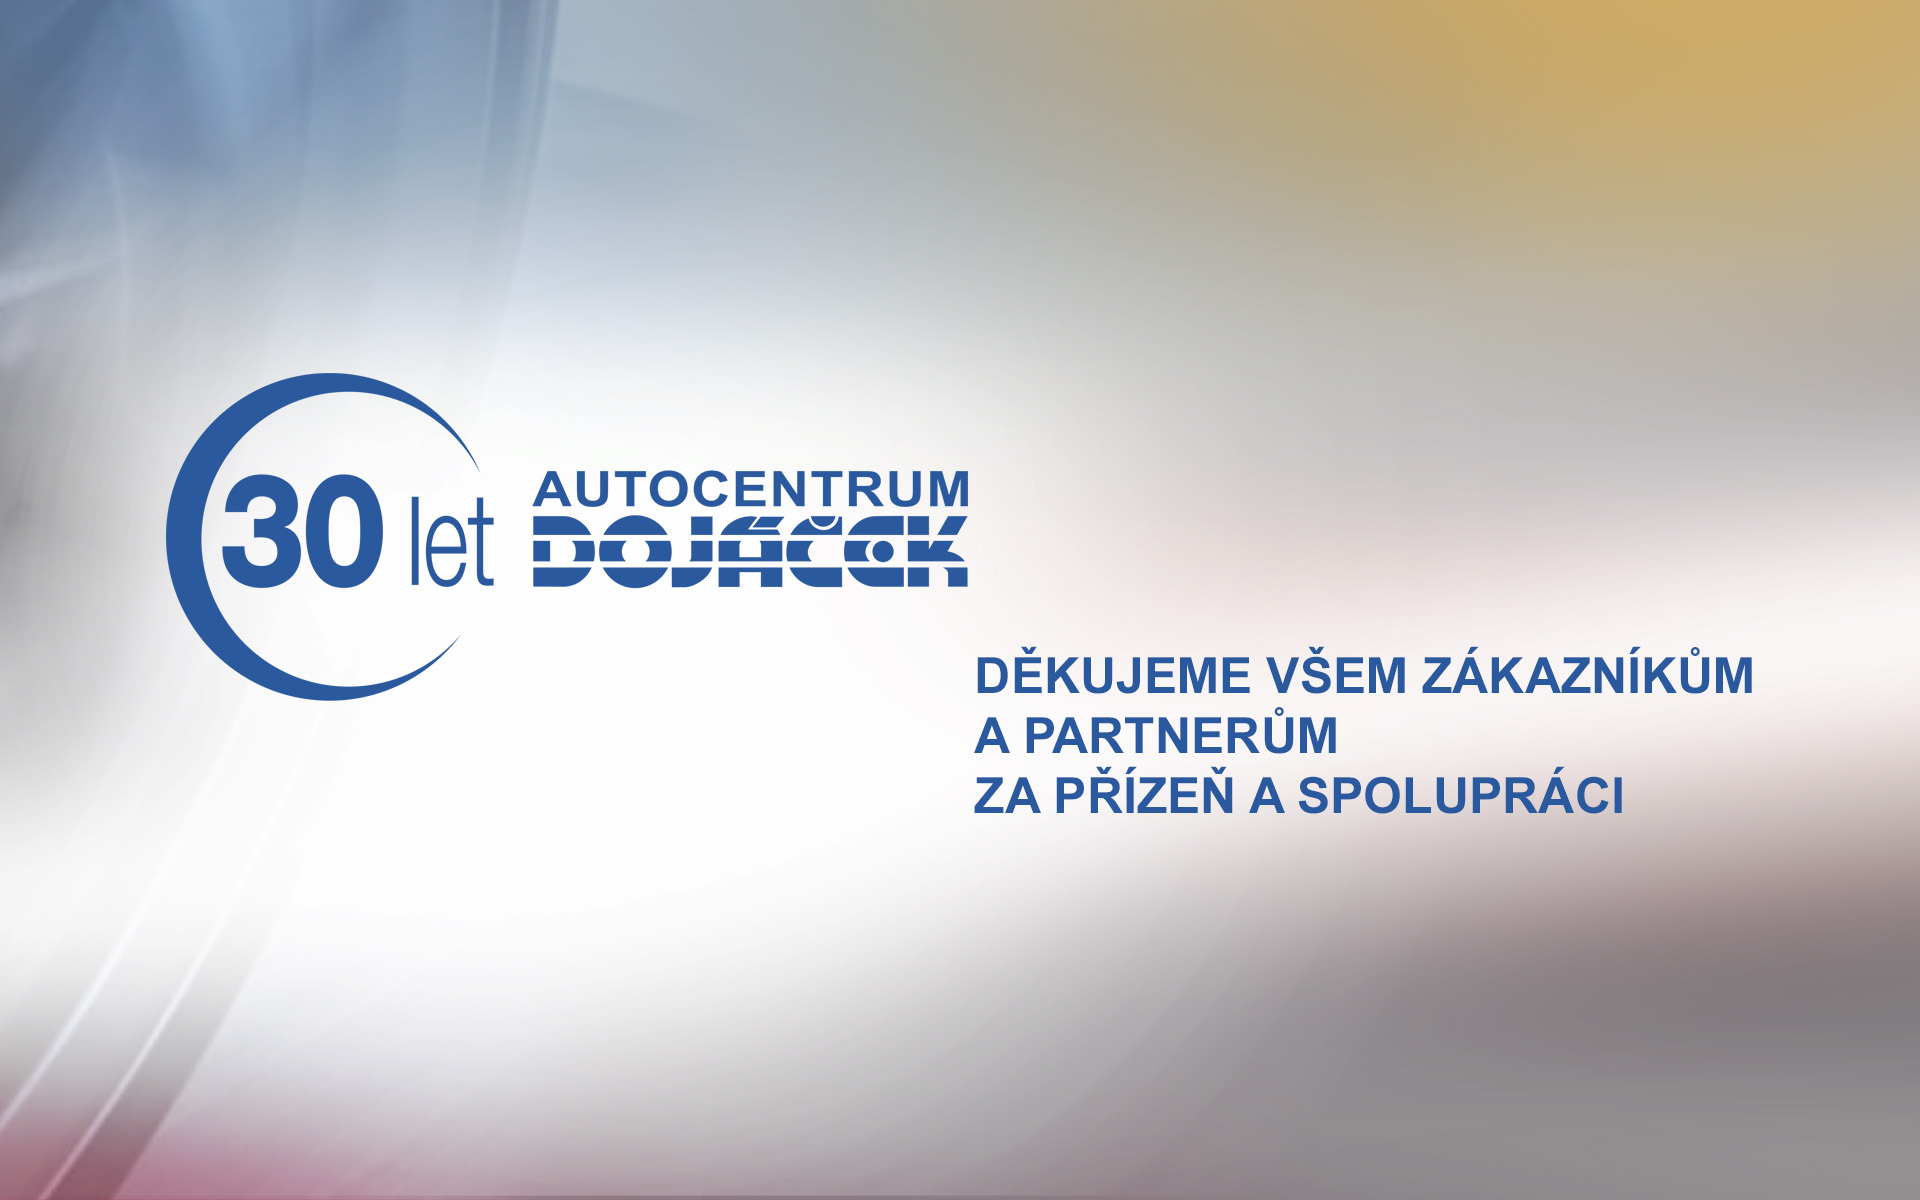 Autocentrum Dojáček slaví 30 let